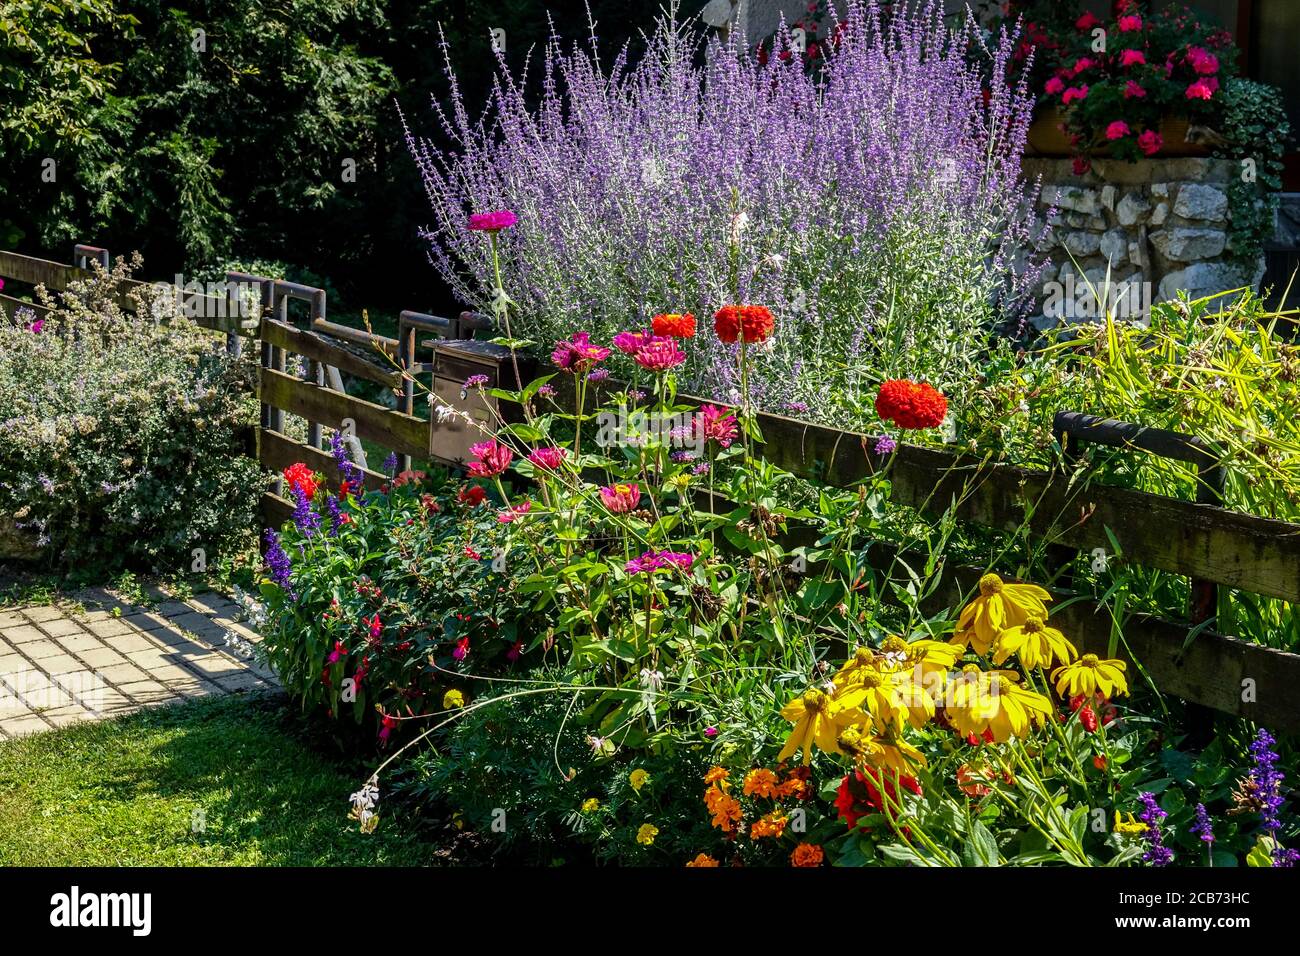 Colorful plants at garden fence Perovskia Zinnia Rudbeckia mixed flowers border wooden fence garden Stock Photo